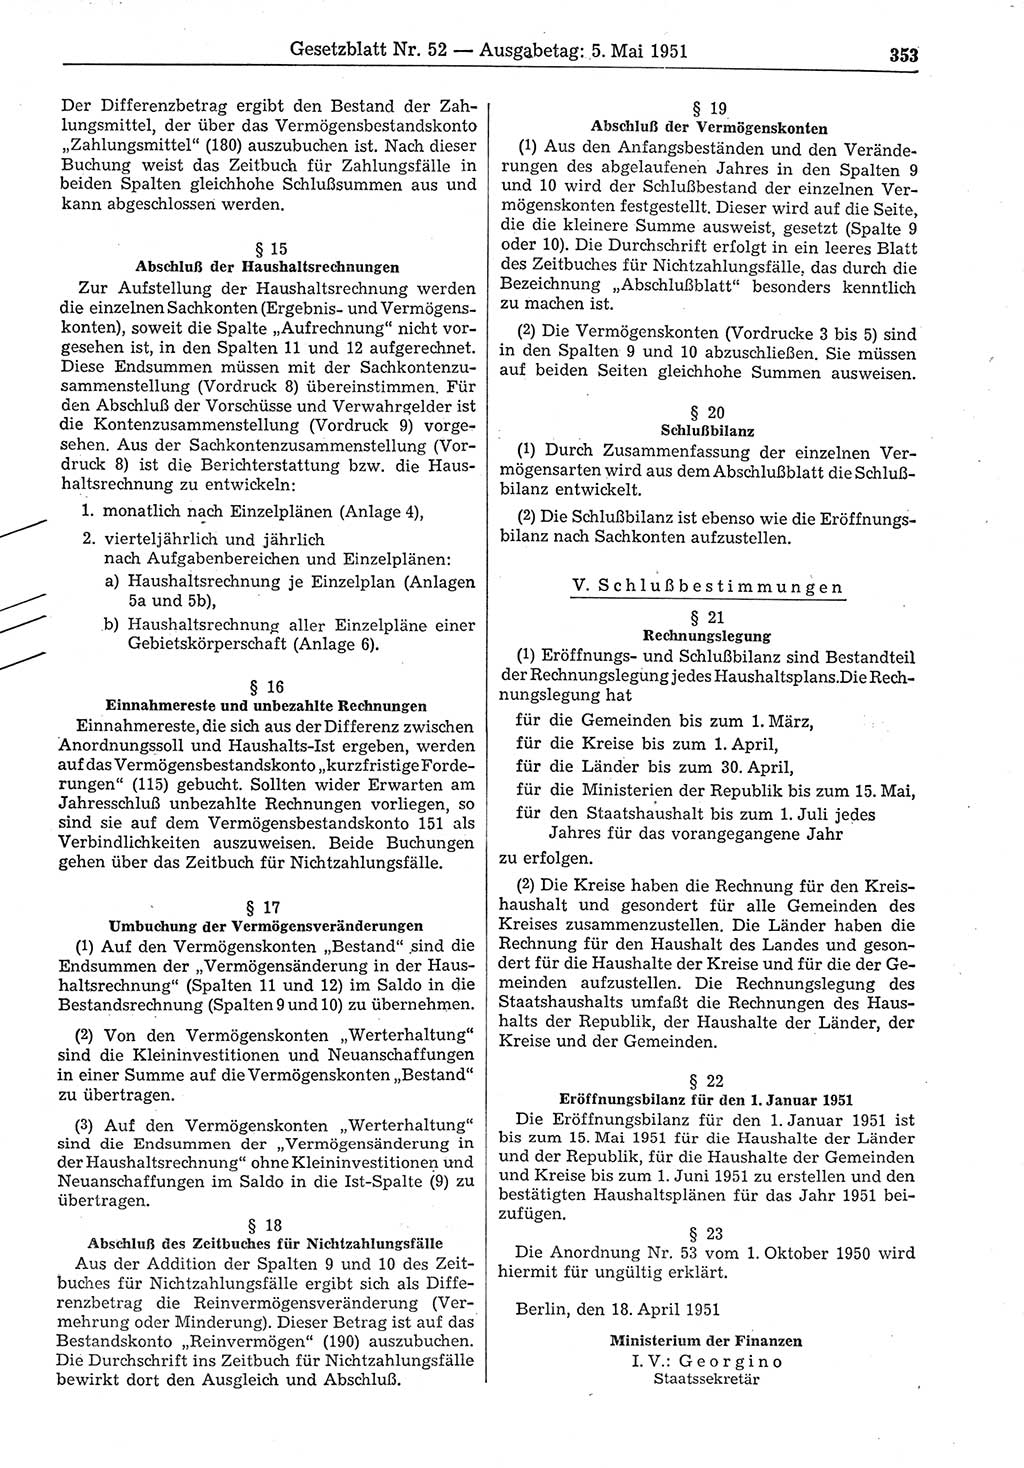 Gesetzblatt (GBl.) der Deutschen Demokratischen Republik (DDR) 1951, Seite 353 (GBl. DDR 1951, S. 353)